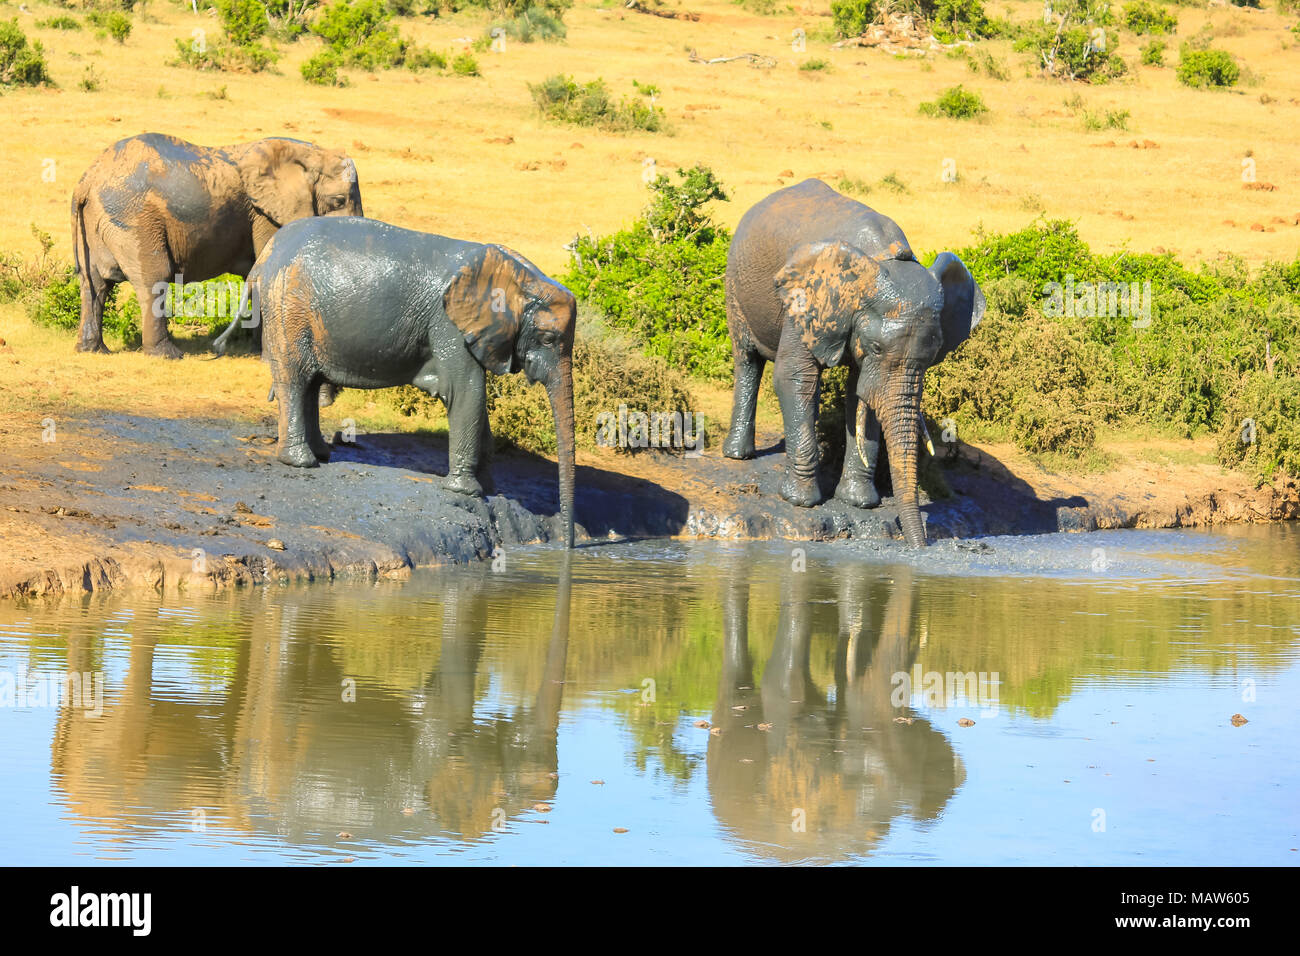 Zwei afrikanische Elefanten bedeckt im Schlamm wasser trinken aus einem Pool im Addo Elephant National Park, Eastern Cape, Südafrika. Saison Sommer in einem sonnigen Tag. Elefanten sind in das Wasserloch widerspiegelt. Stockfoto